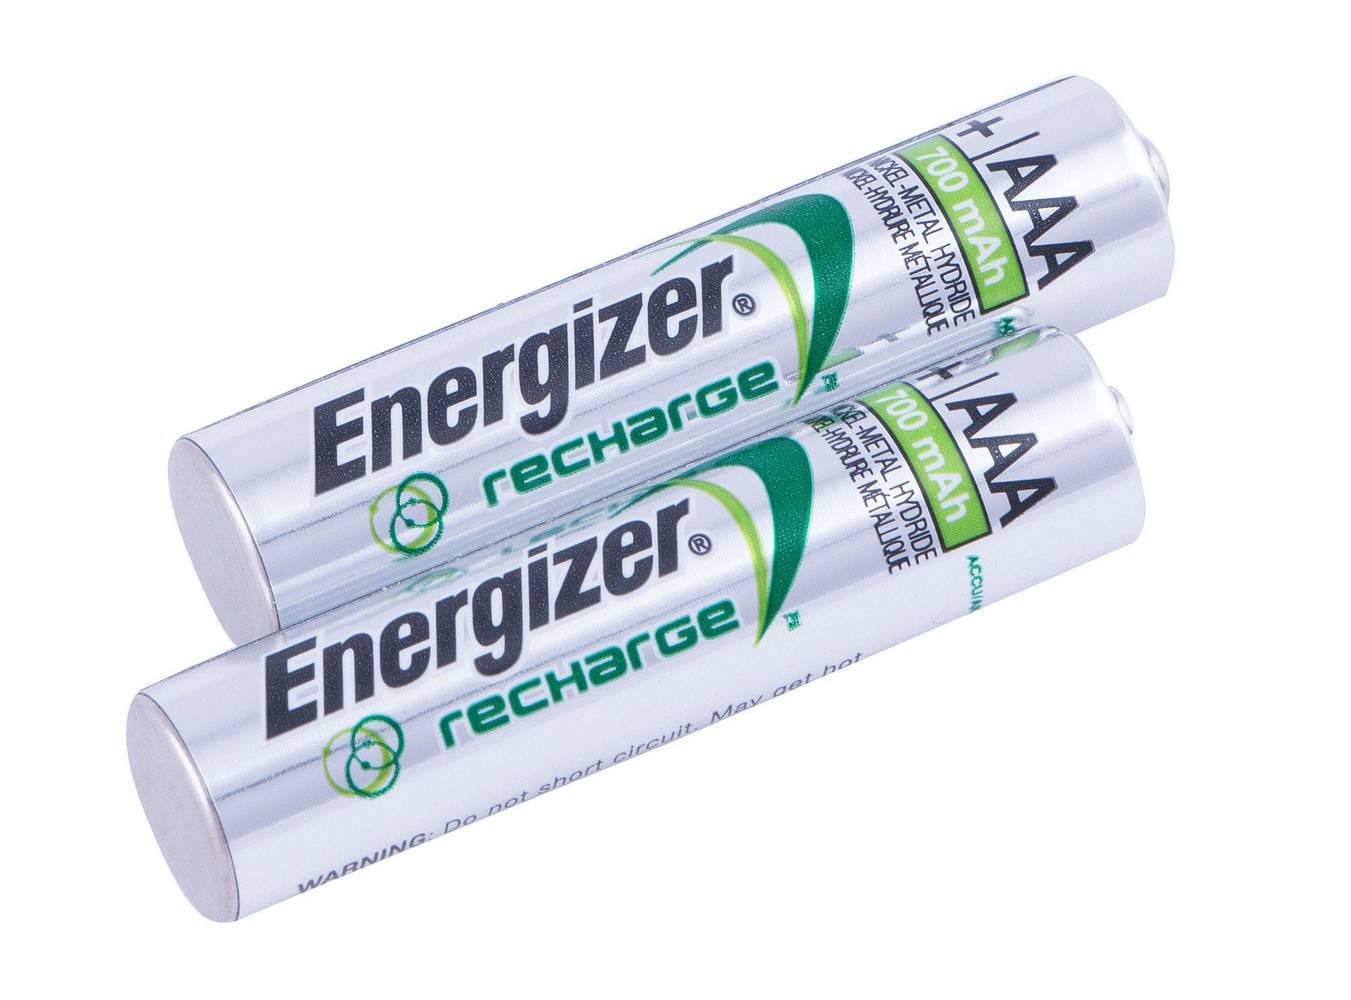 Energizer pilas recargables aaa (2 un)